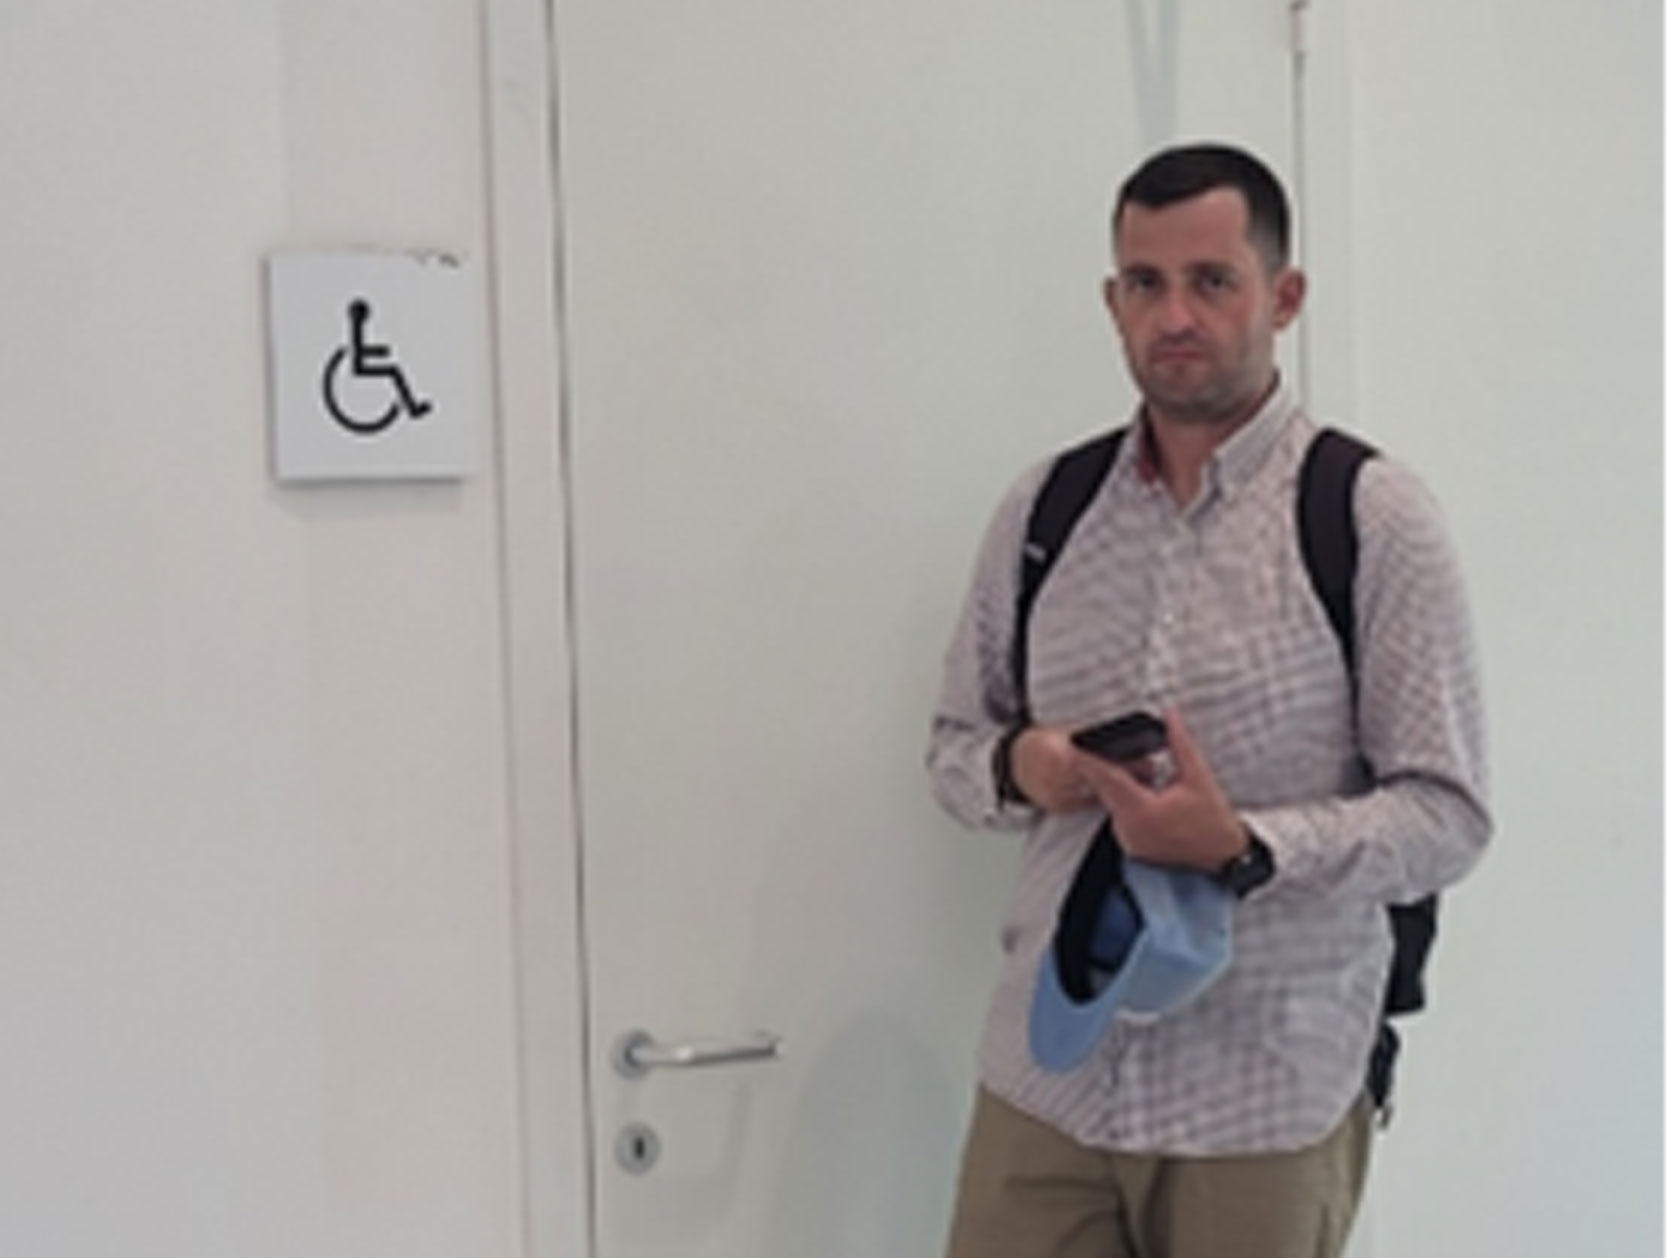 oznaczenia toalety dla osób z niepełnosprawnościami